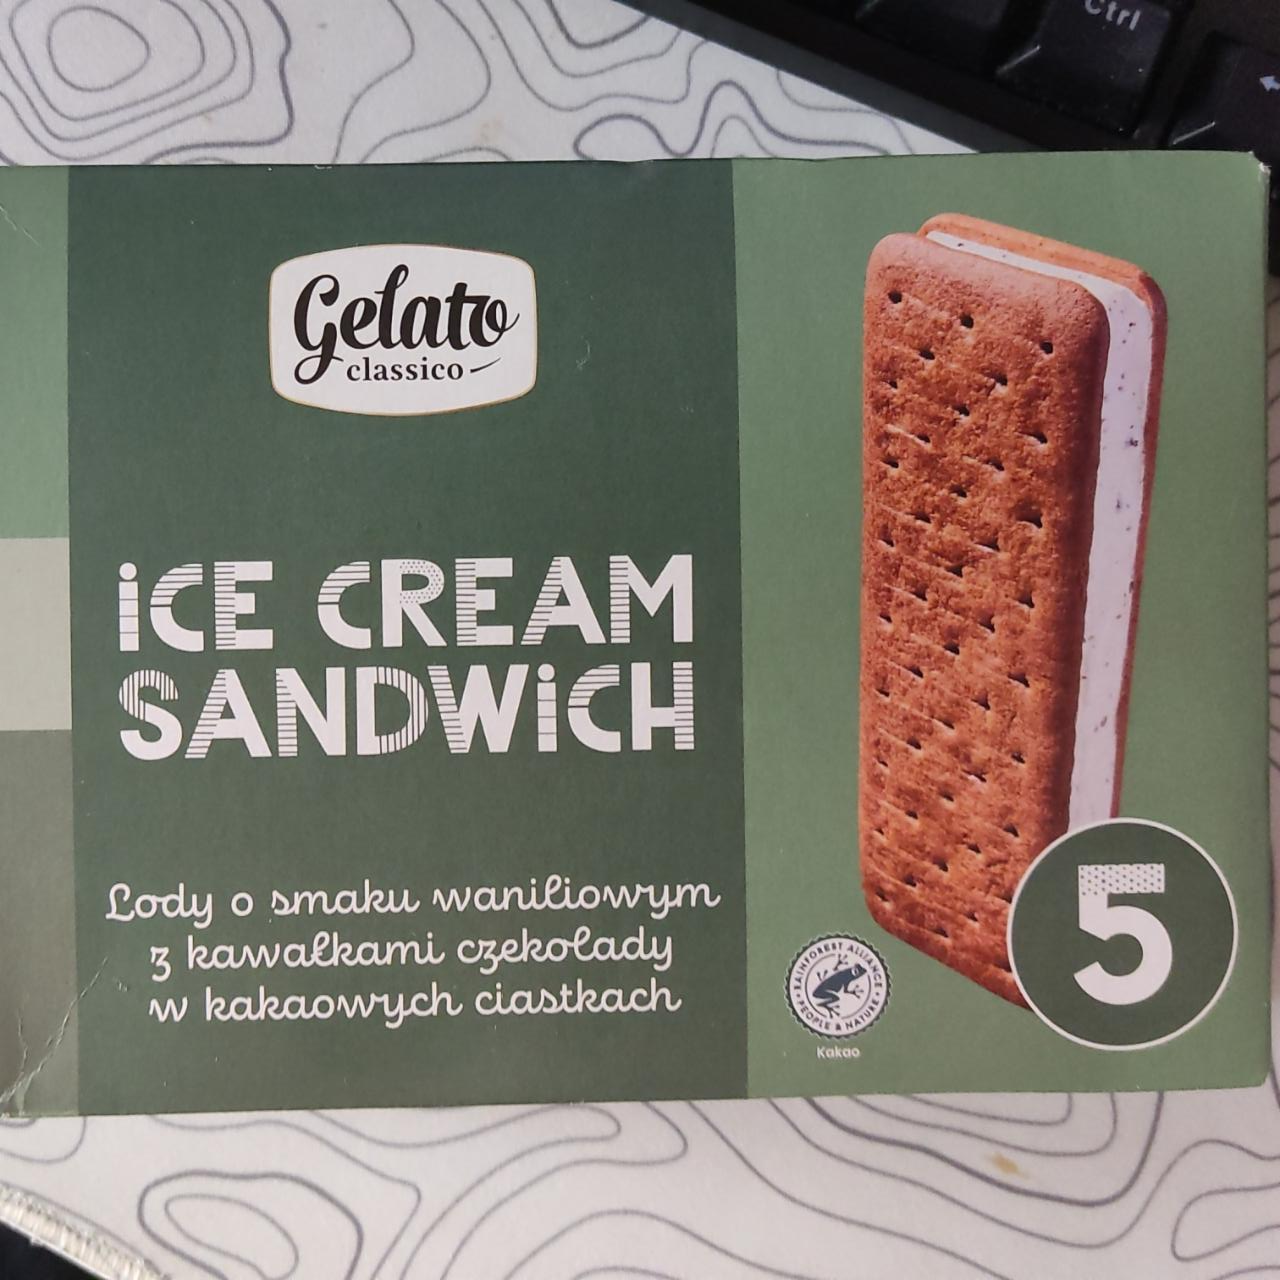 Фото - мороженое джелато сендвич Gelato classico